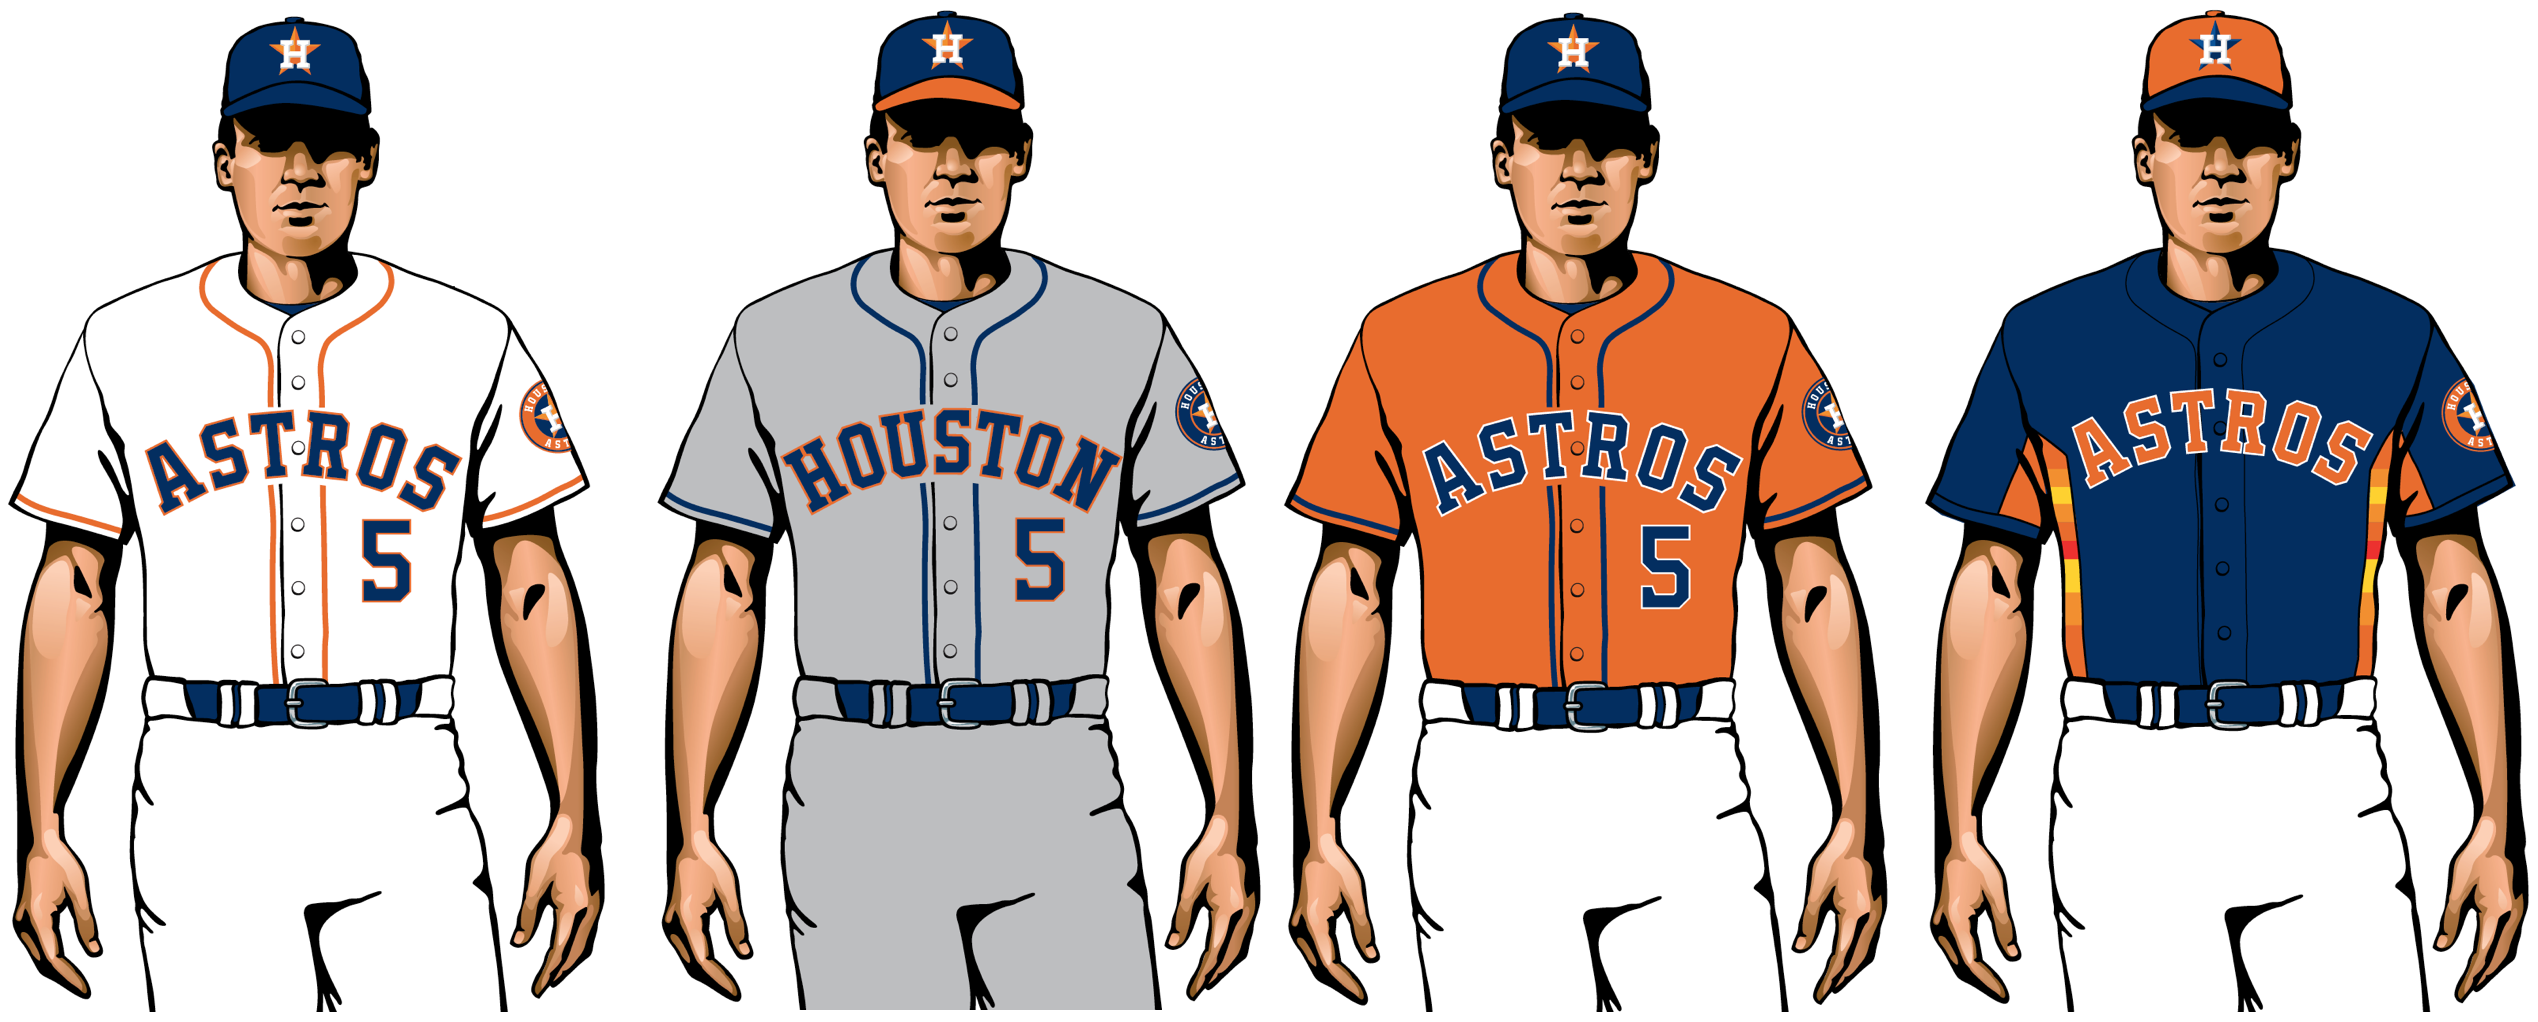 astros 2020 uniforms